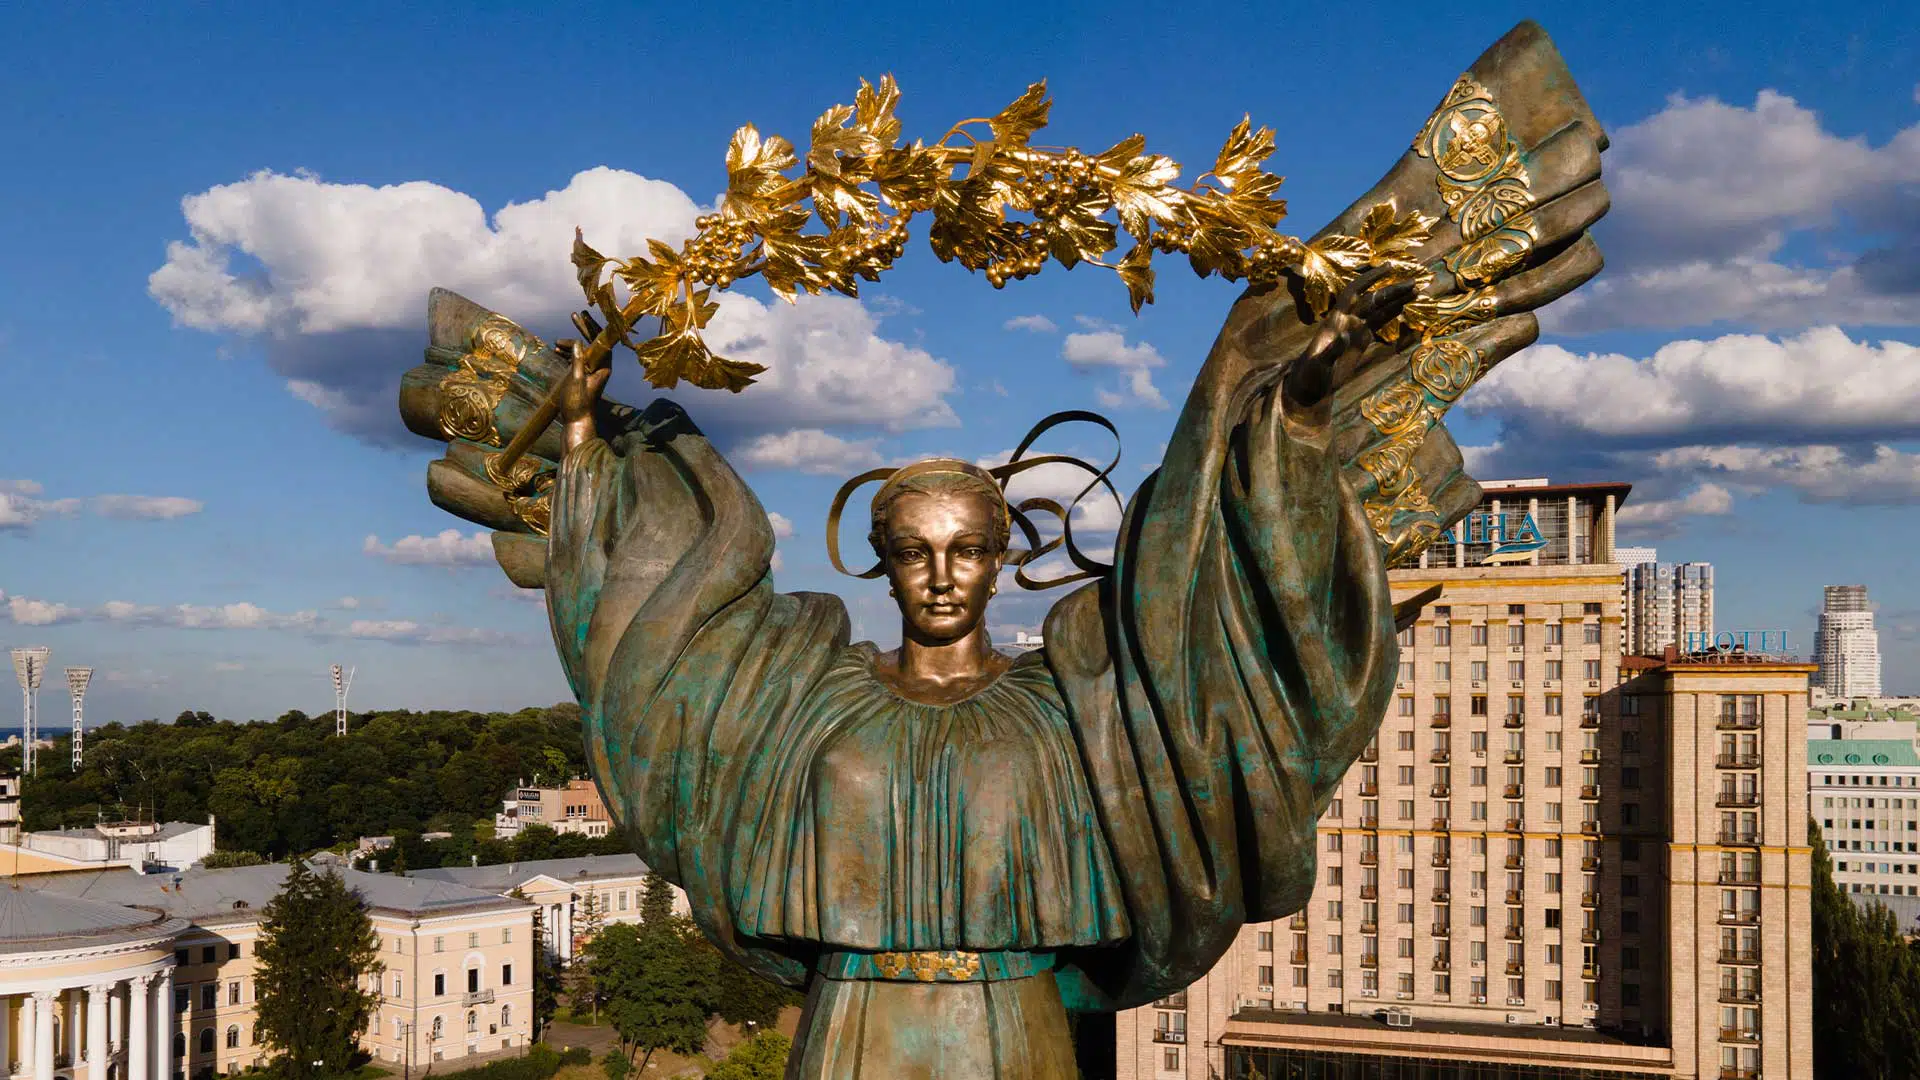 Ukraine Bereginya Monument Maidan